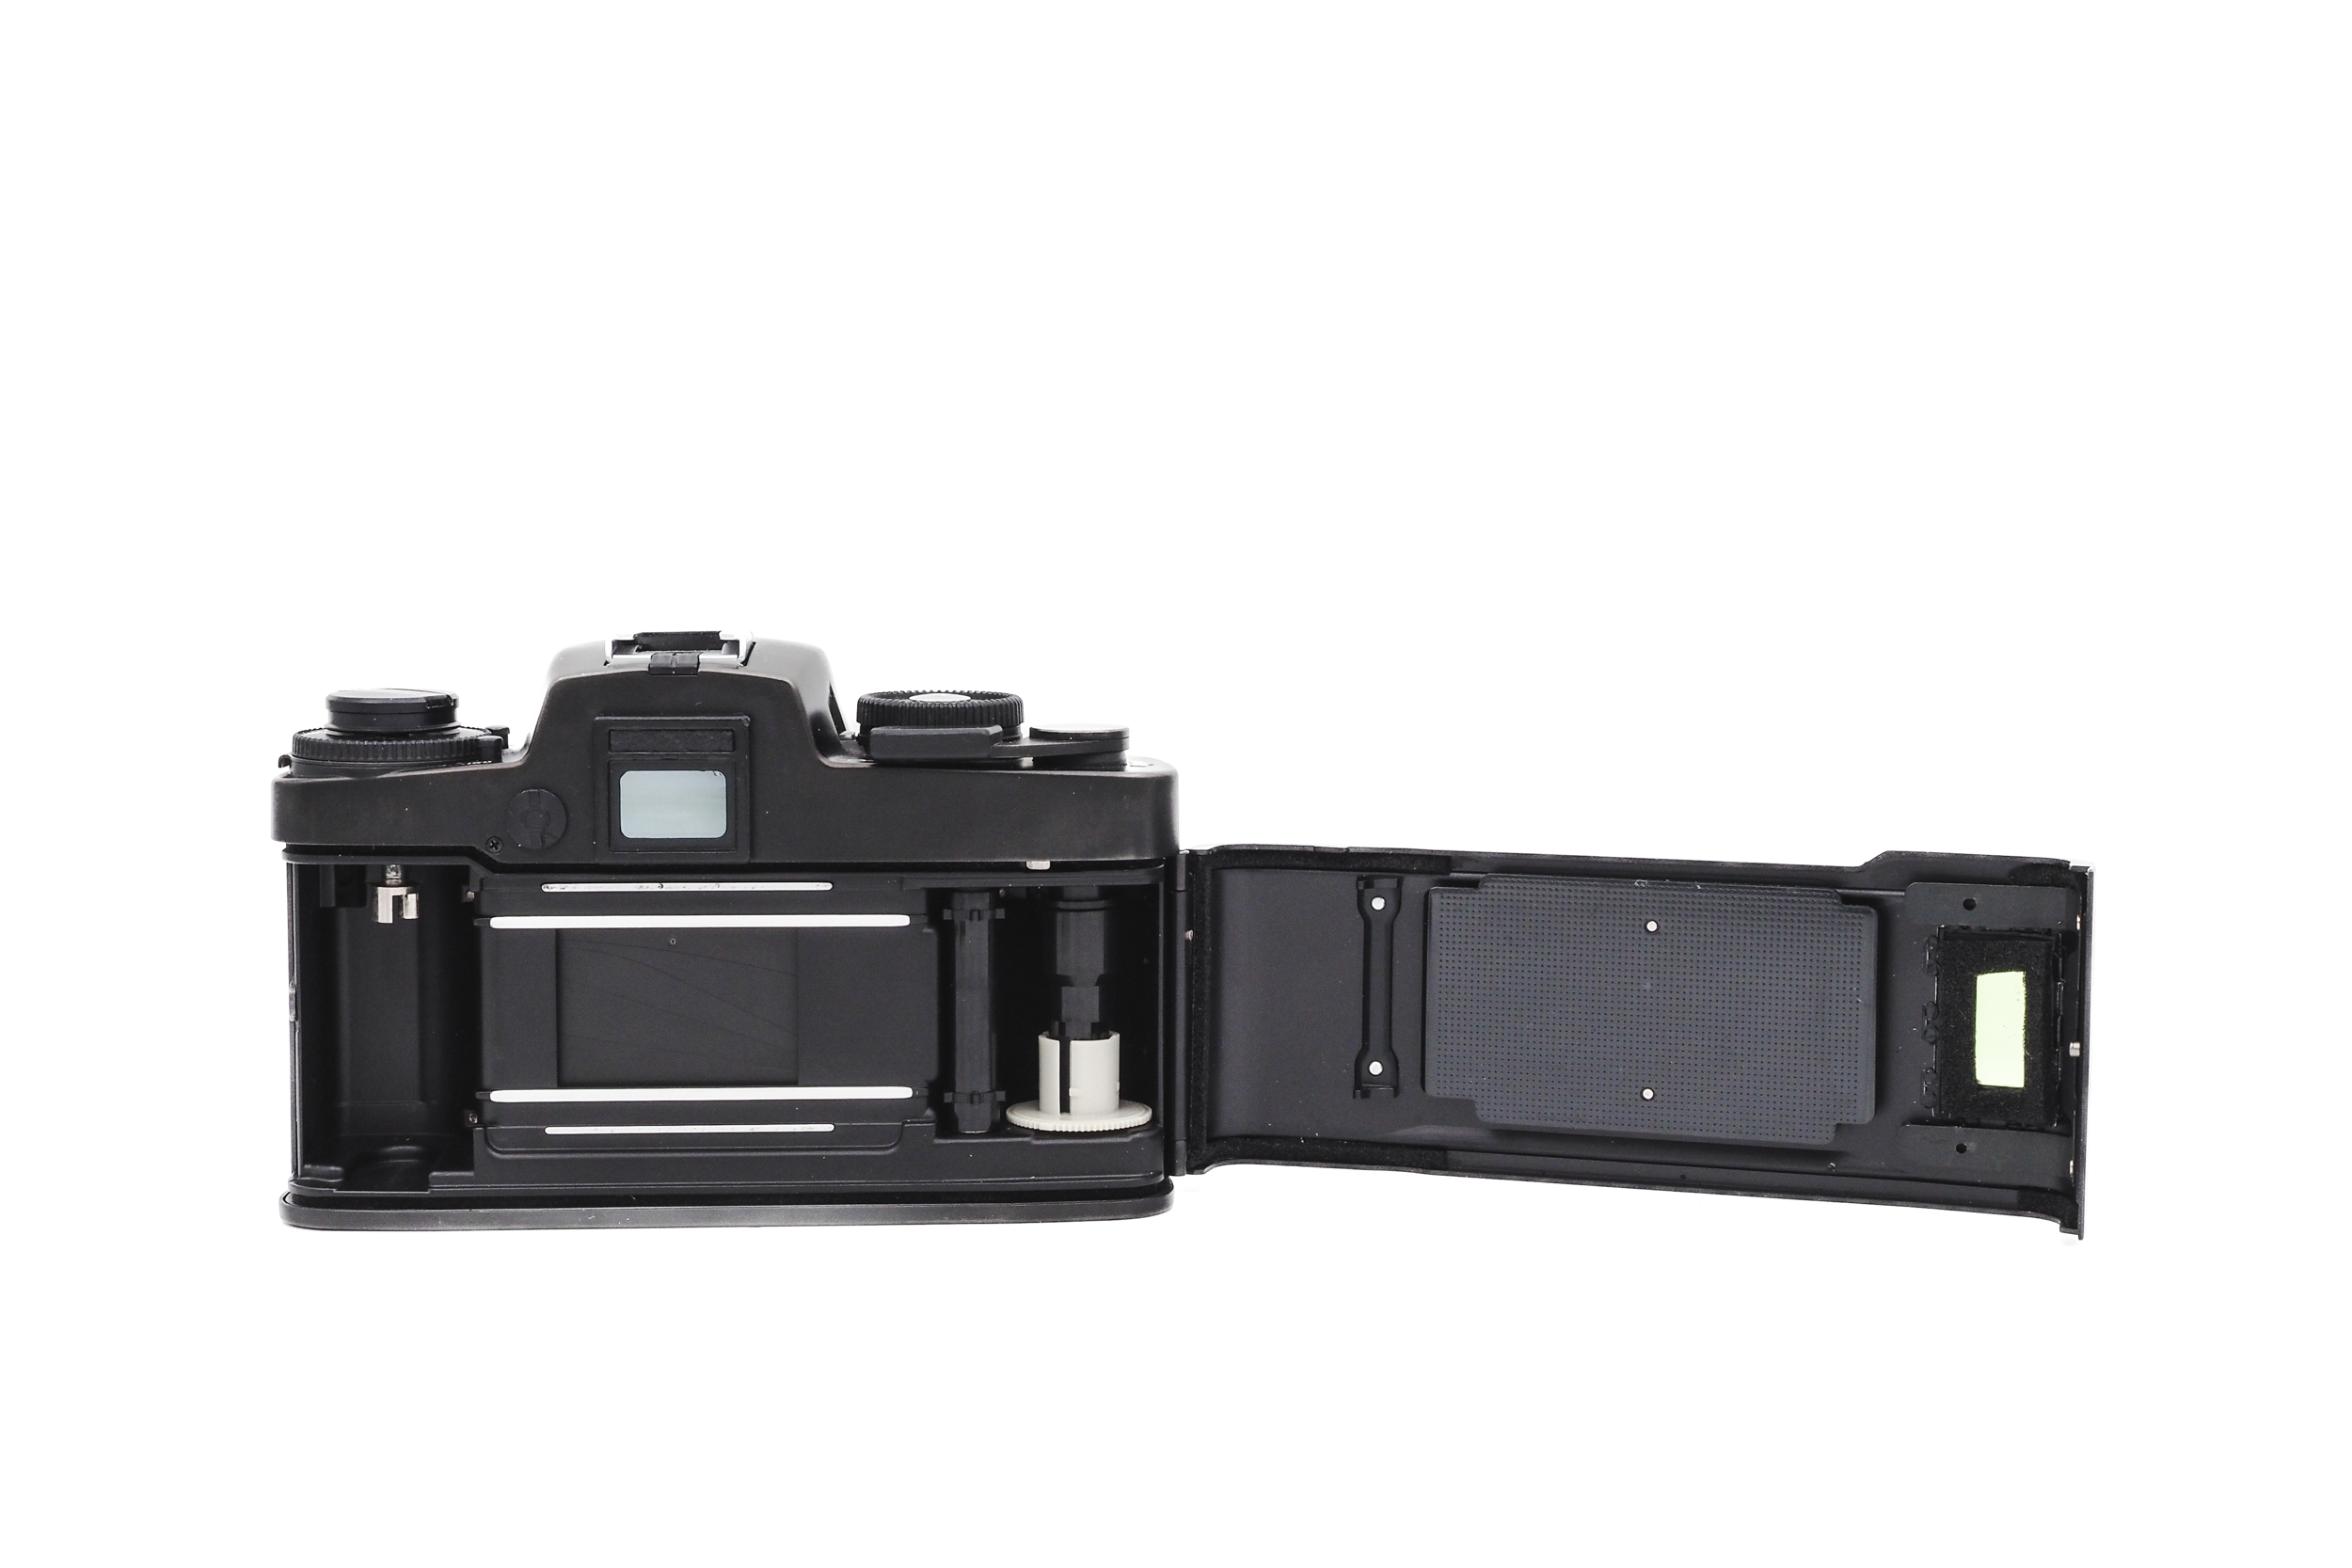 Leica R4 + 50mm f/2 Summicron-R 1980